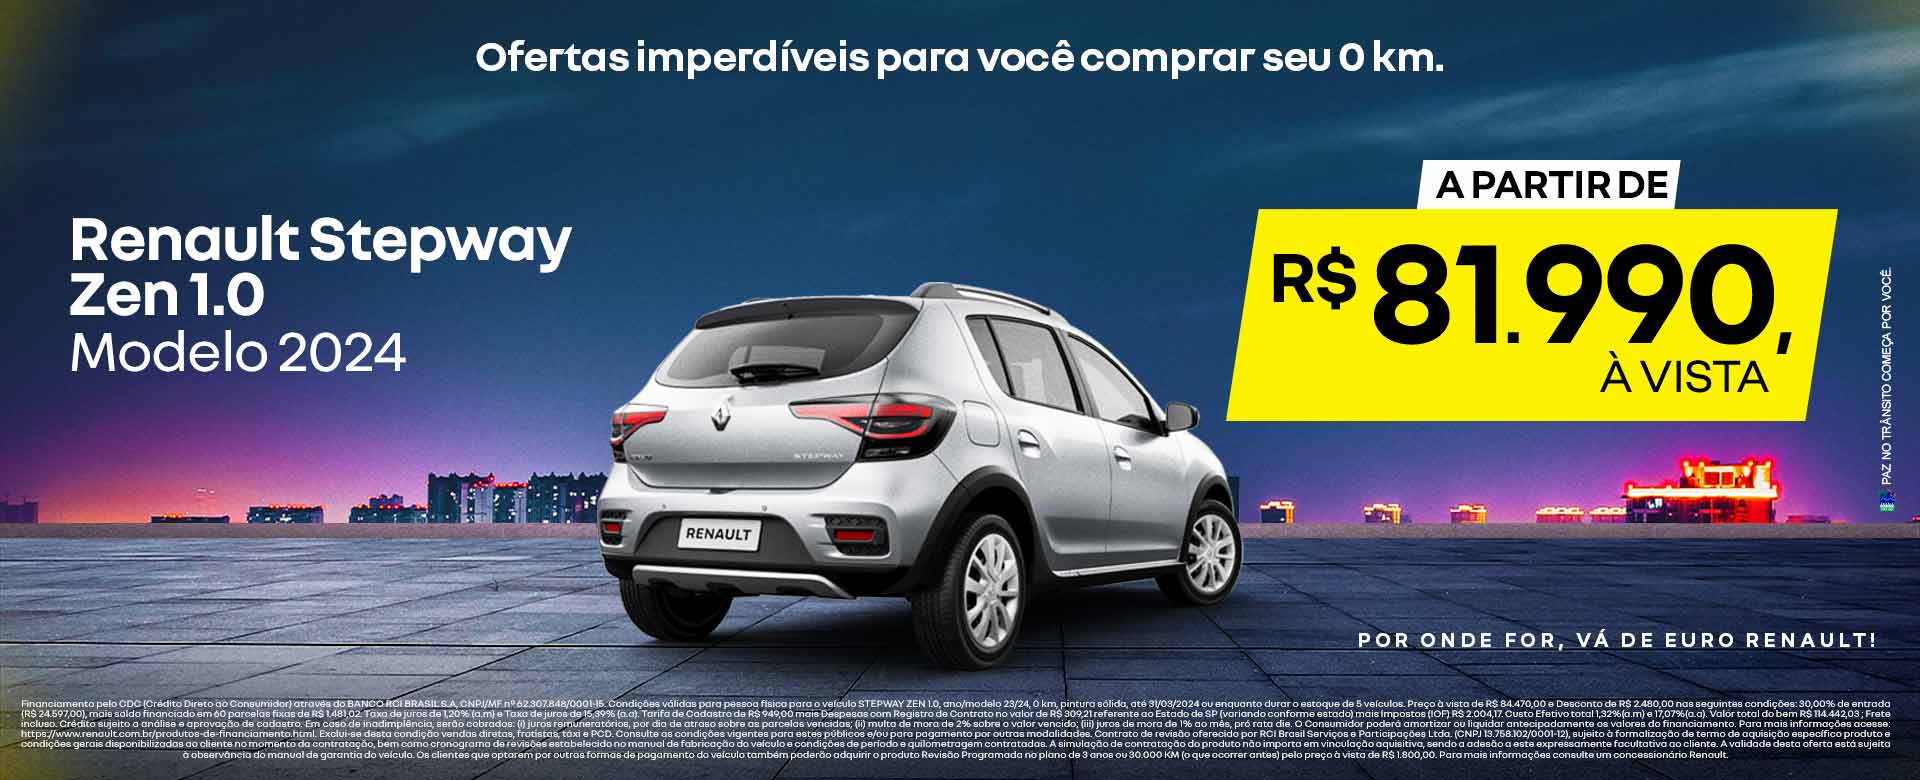 Renault STEPWAY zen 1.0 por R$81.990 - Ribeirão Preto